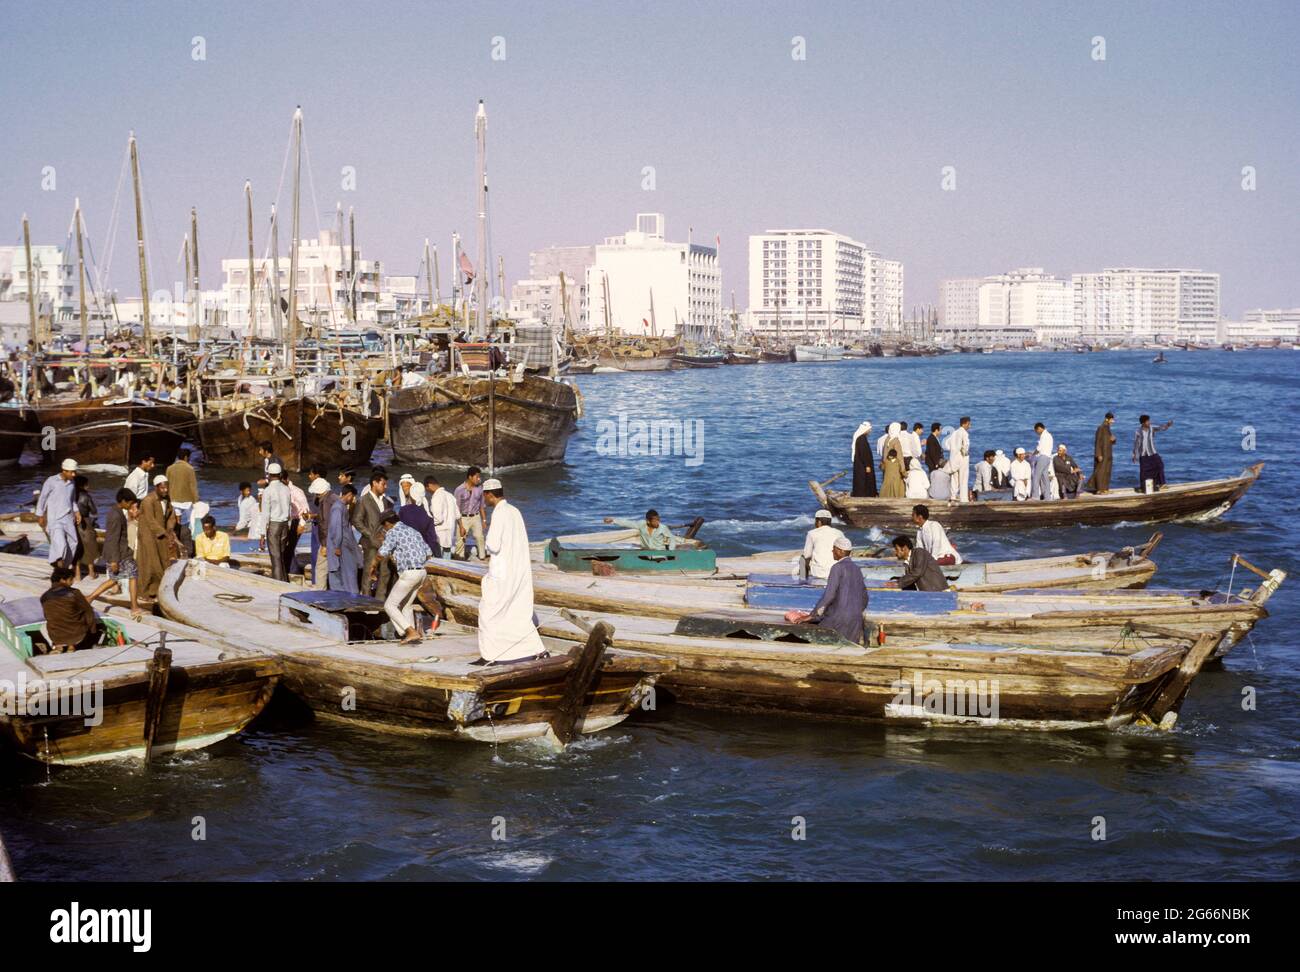 Dubai 1972, Émirats Arabes Unis. Abras (bateaux-taxis) traversant la crique. Banque nationale de Dubaï au centre; immeubles d'appartements et de bureaux en arrière-plan. Banque D'Images